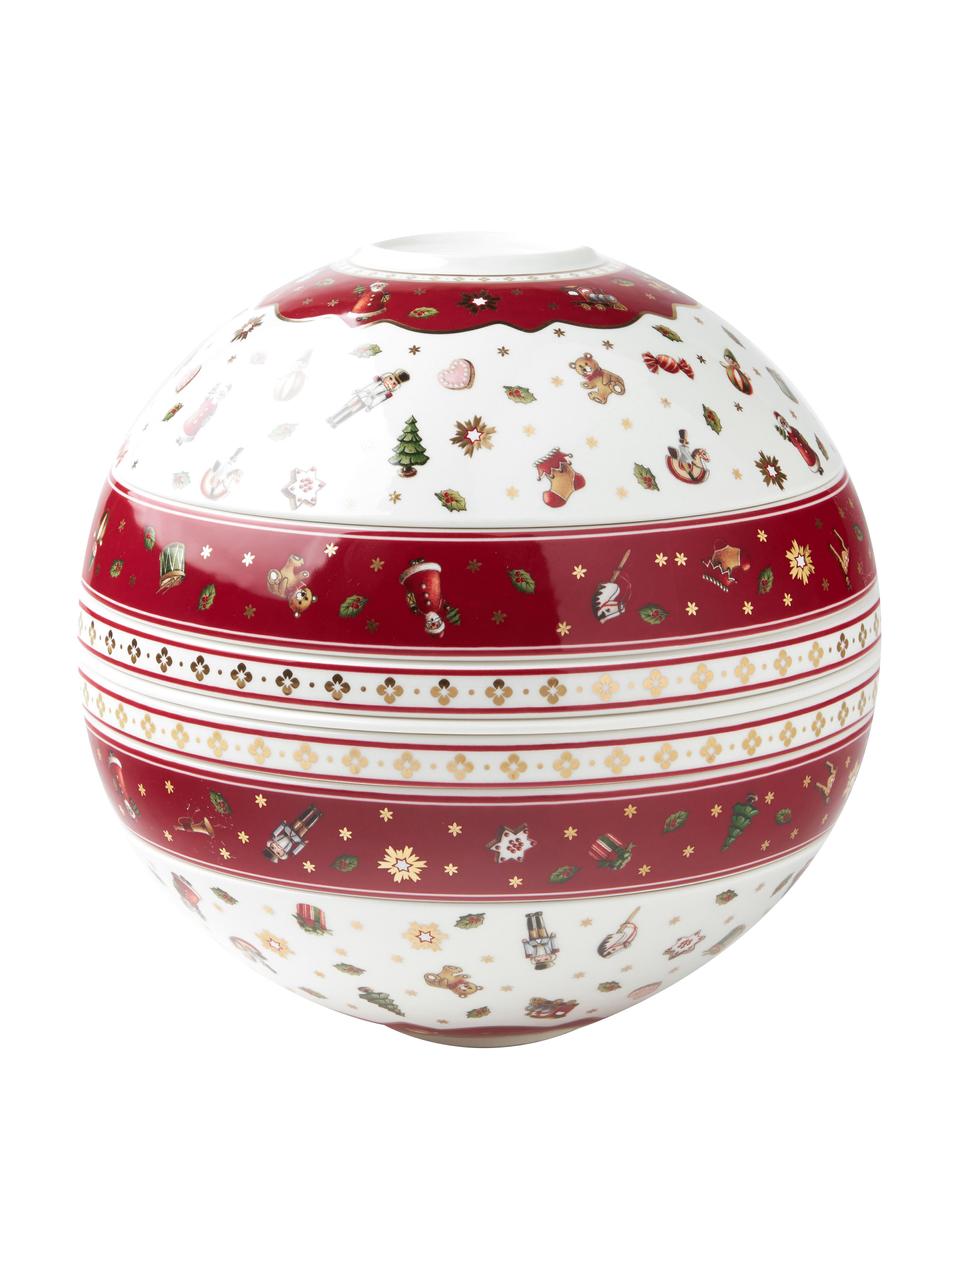 Delight La Boule, Premium Porzellan, Rot, Weiß, gemustert, Set mit verschiedenen Größen